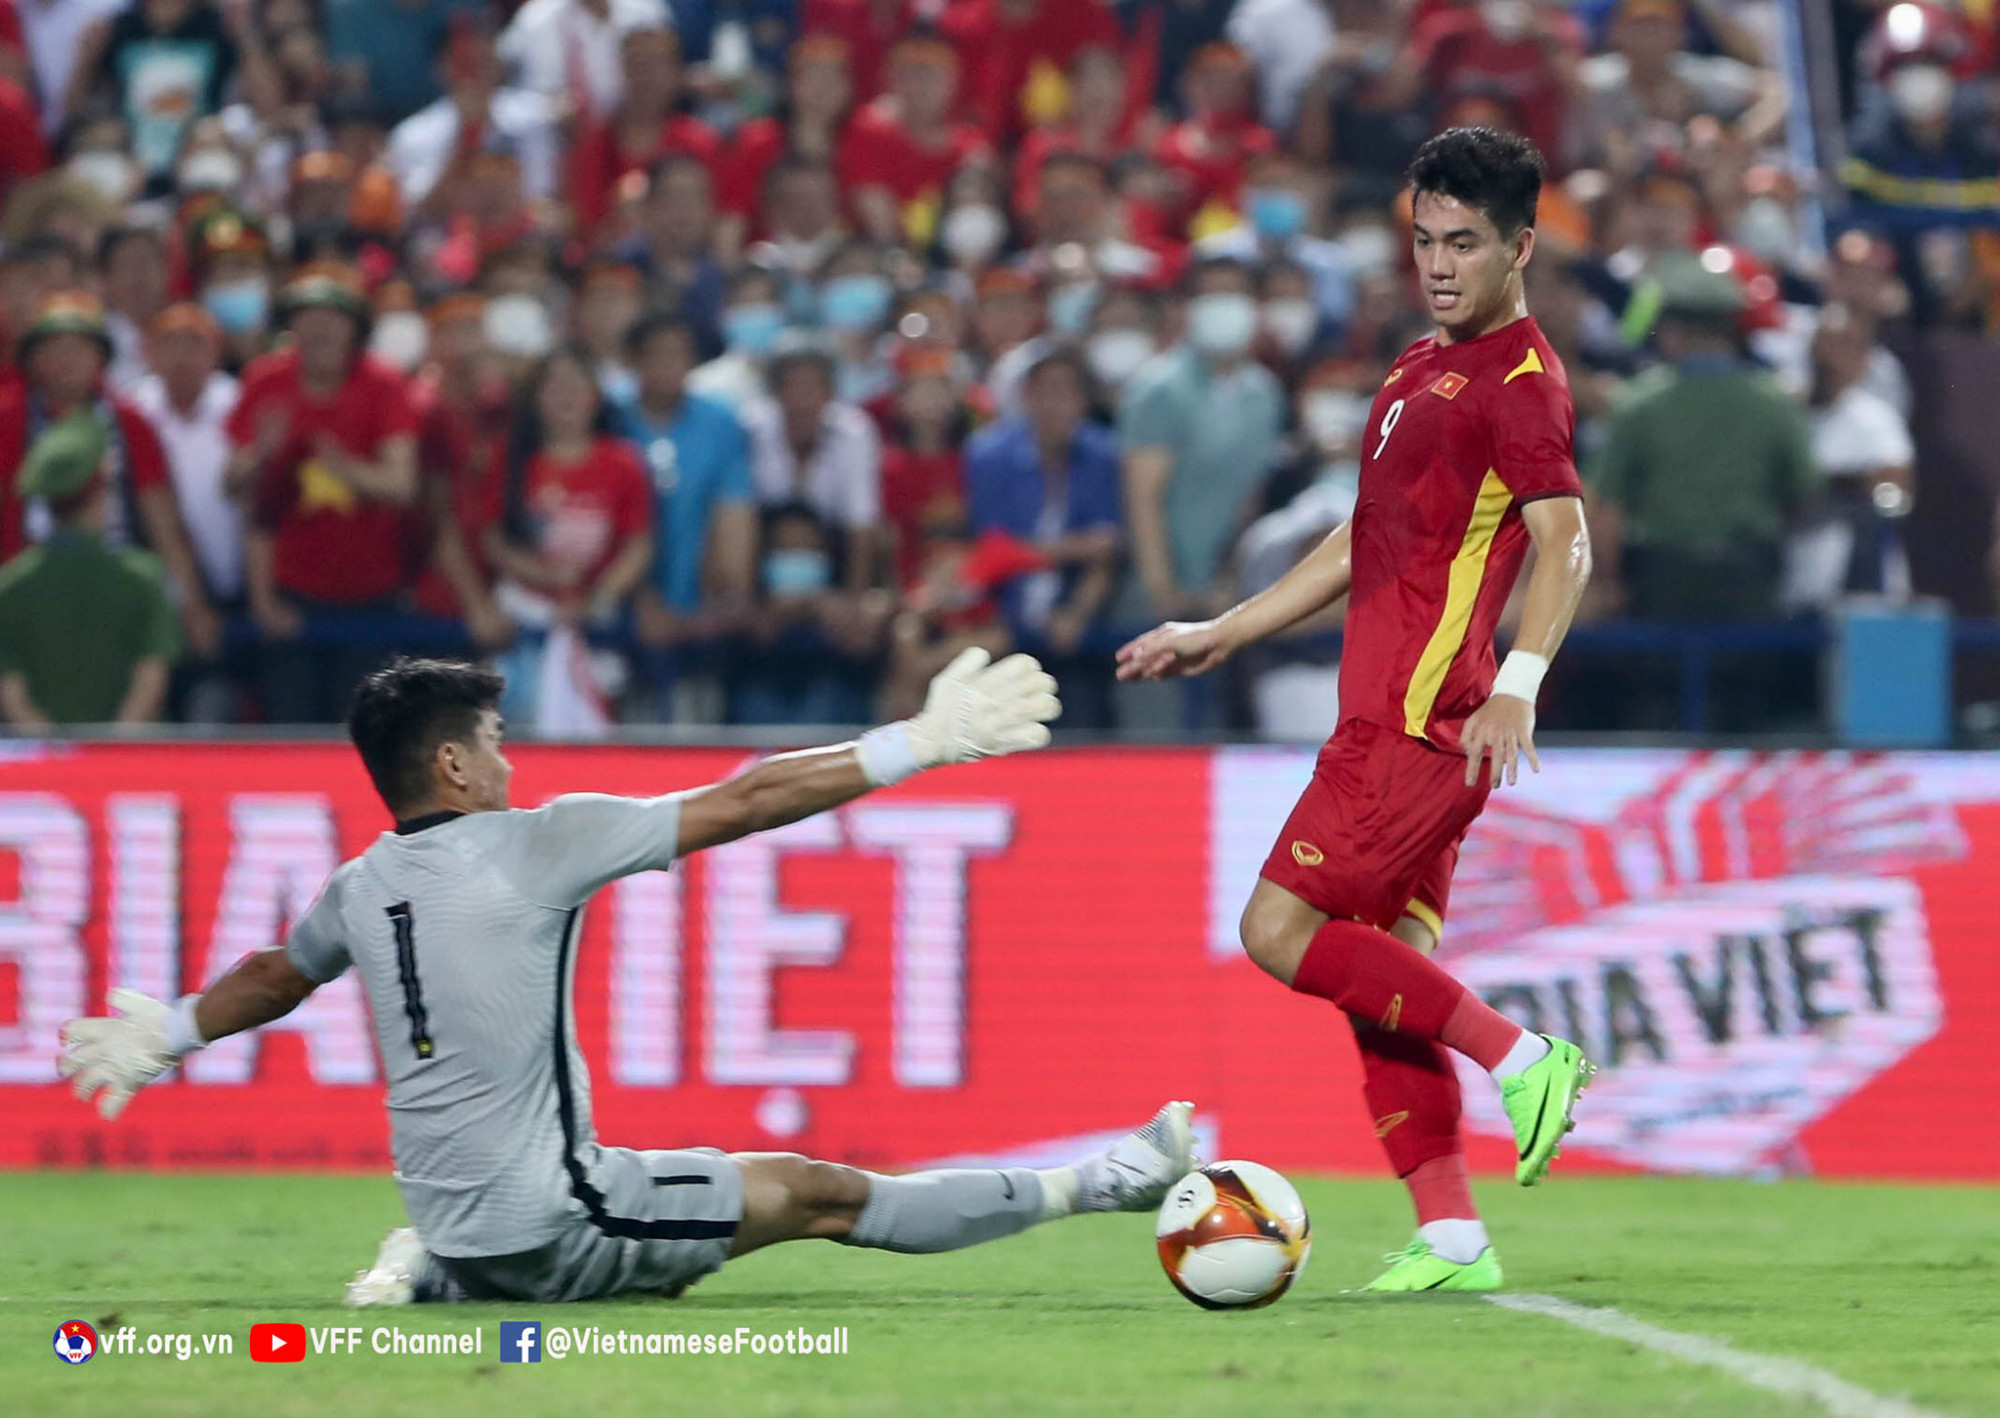 Tiến Linh nhiều lần bỏ lỡ nhưng những phút tỏa sáng cuối trận, tiền đạo số 9 đã giúp U23 Việt Nam giành vé vào chung kết. Ảnh: VFF